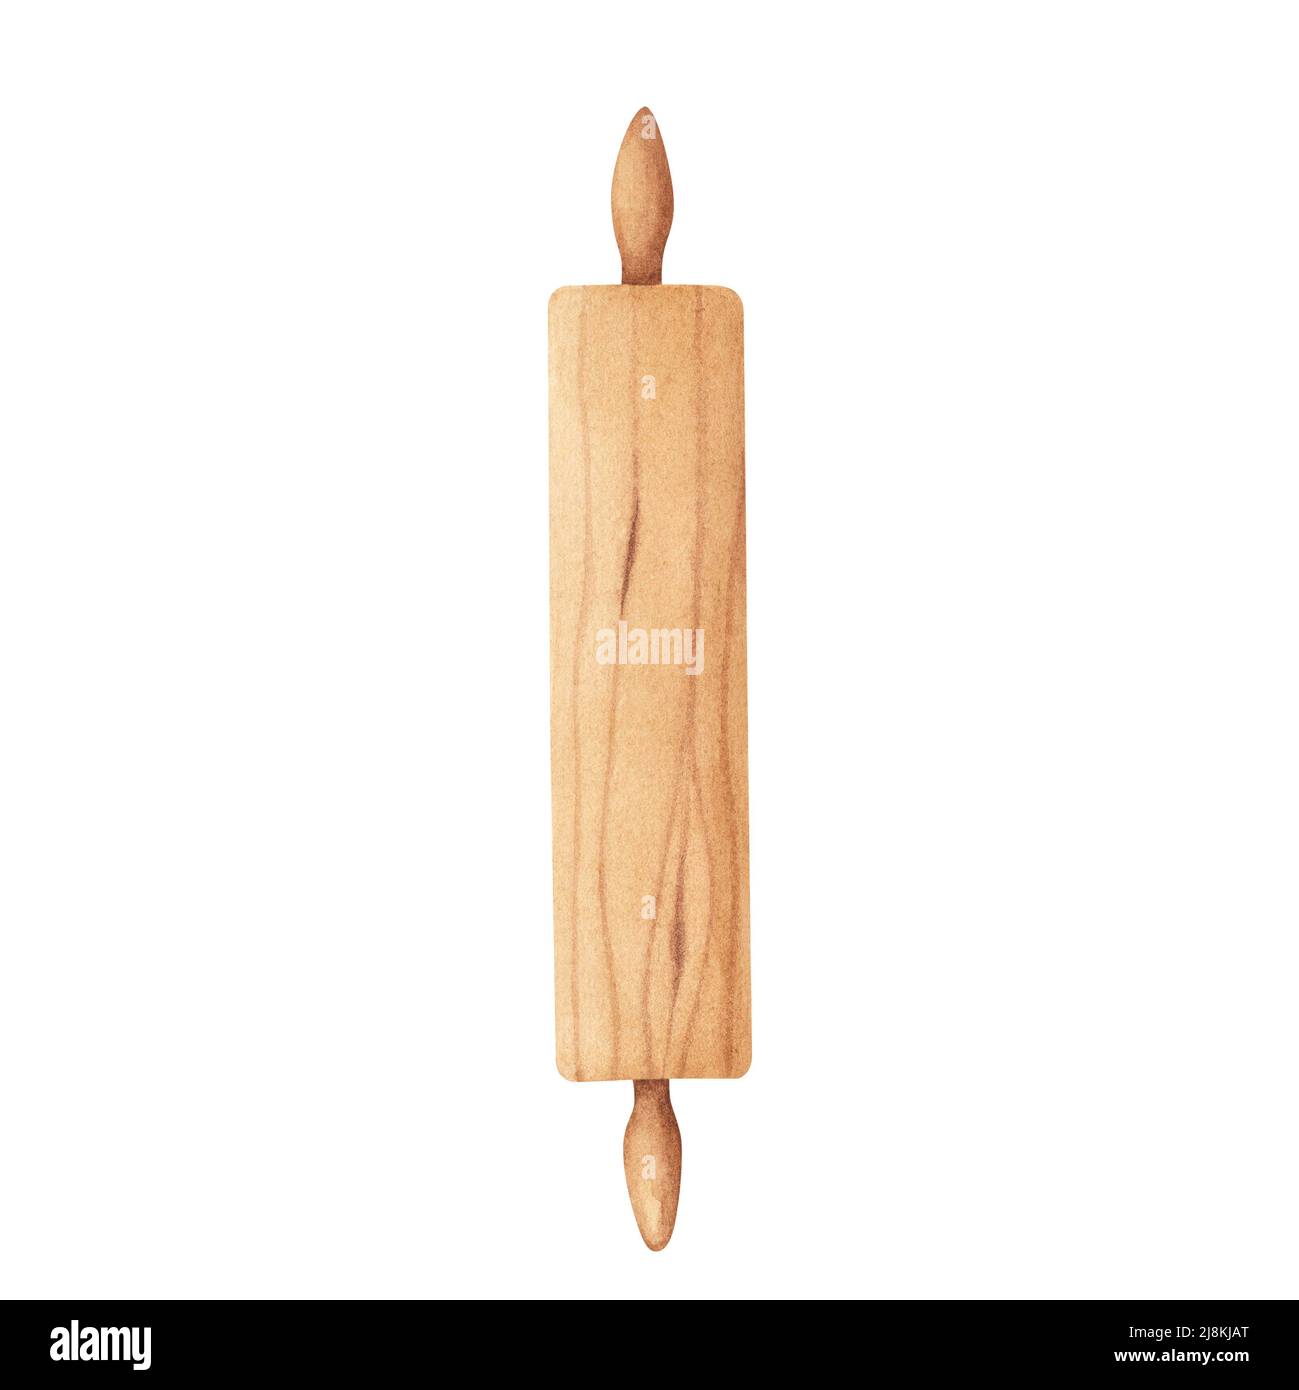 Küchengeräte aus Holz: Holz-Nudelholz für hausgemachten Teig. Aquarelldarstellung isoliert auf weißem Hintergrund. Kunst für Design, Textilien, Stockfoto